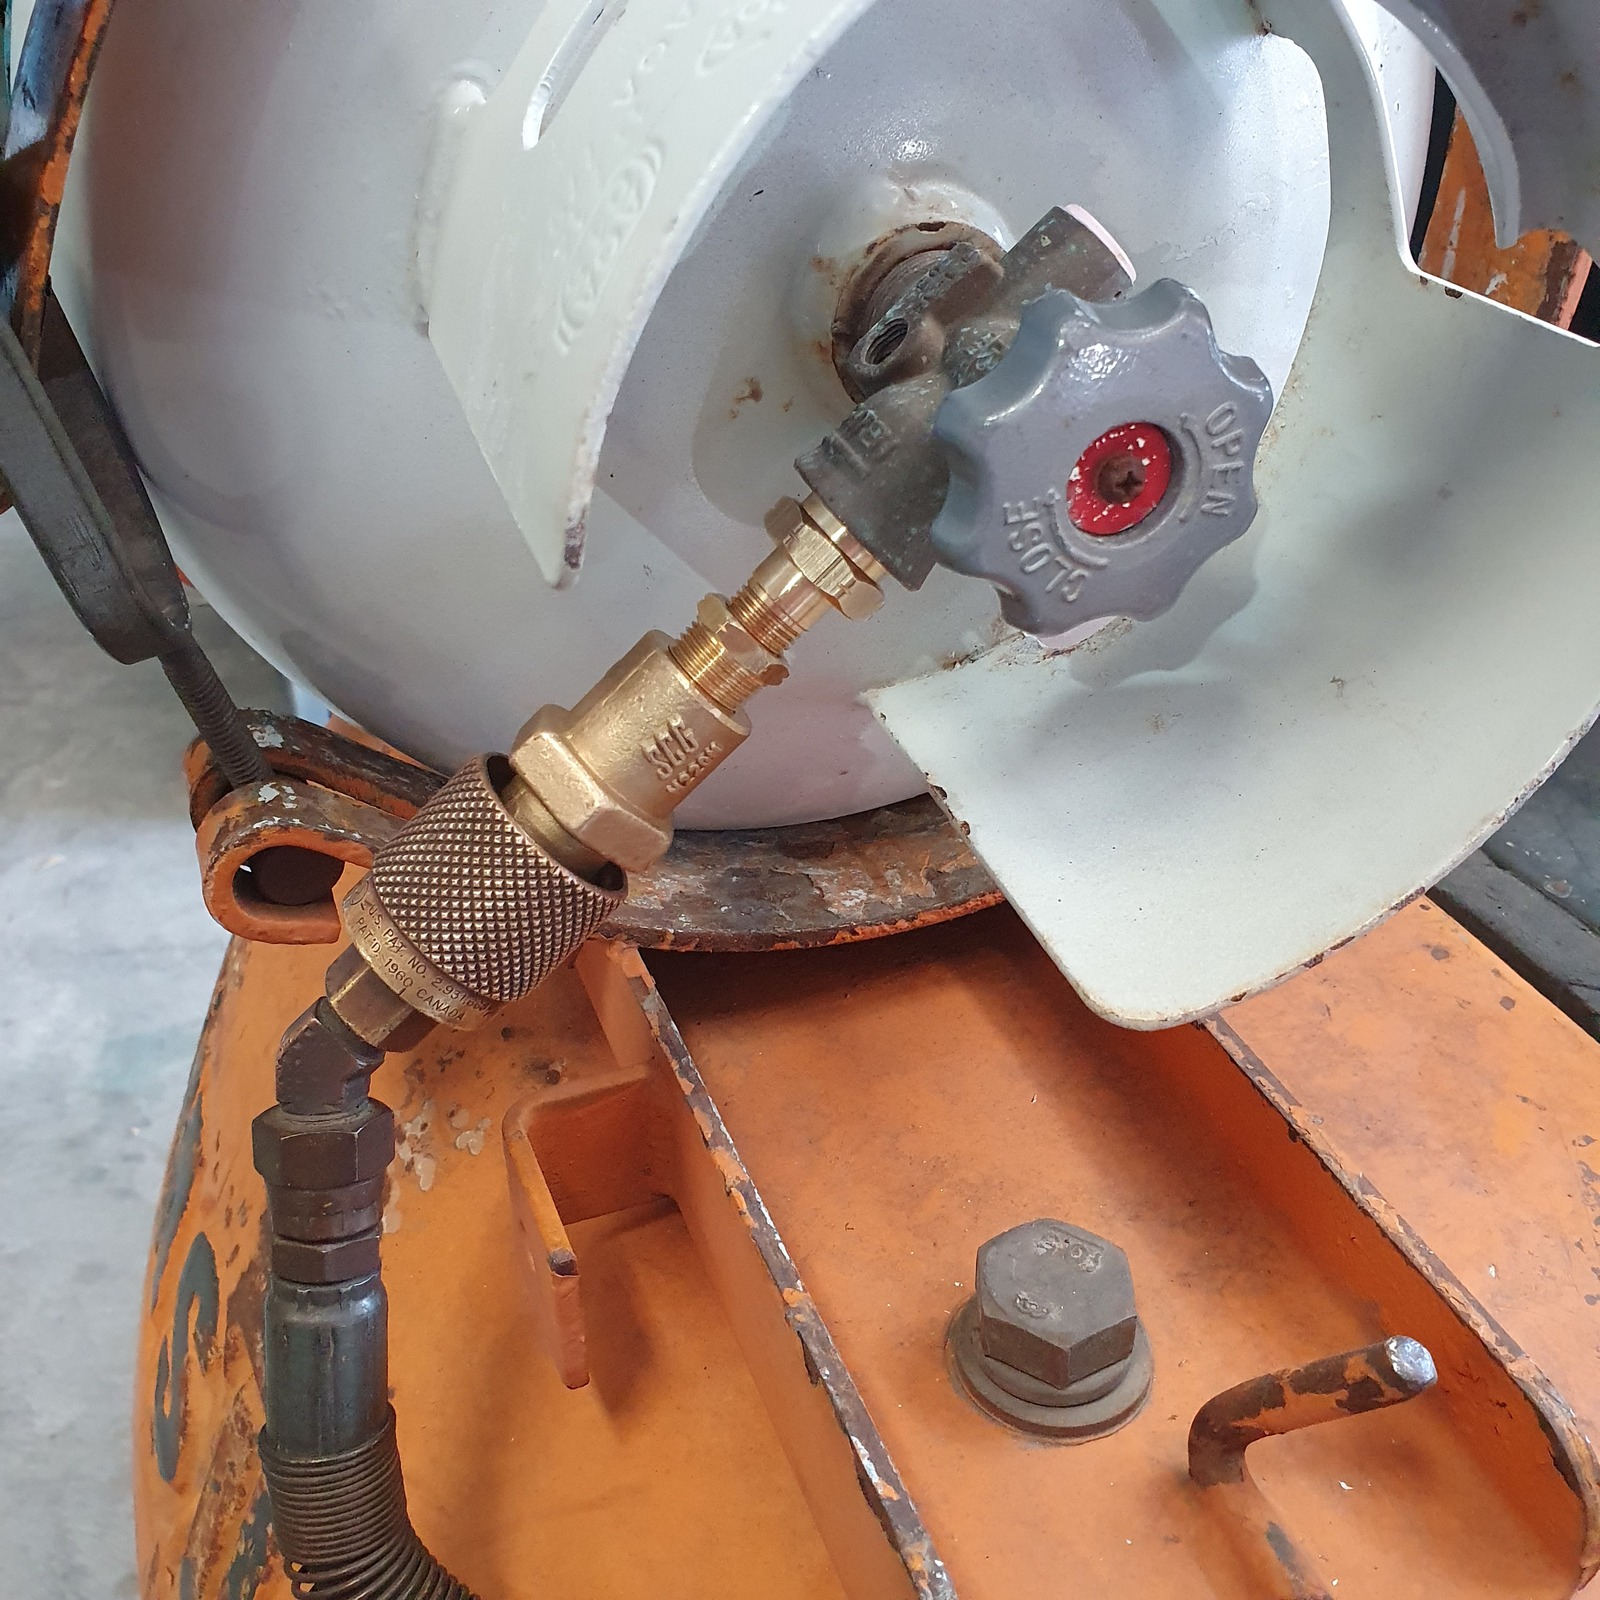 Forklift vapour gas Bottle Adapter Set for propane regulator, pol connector